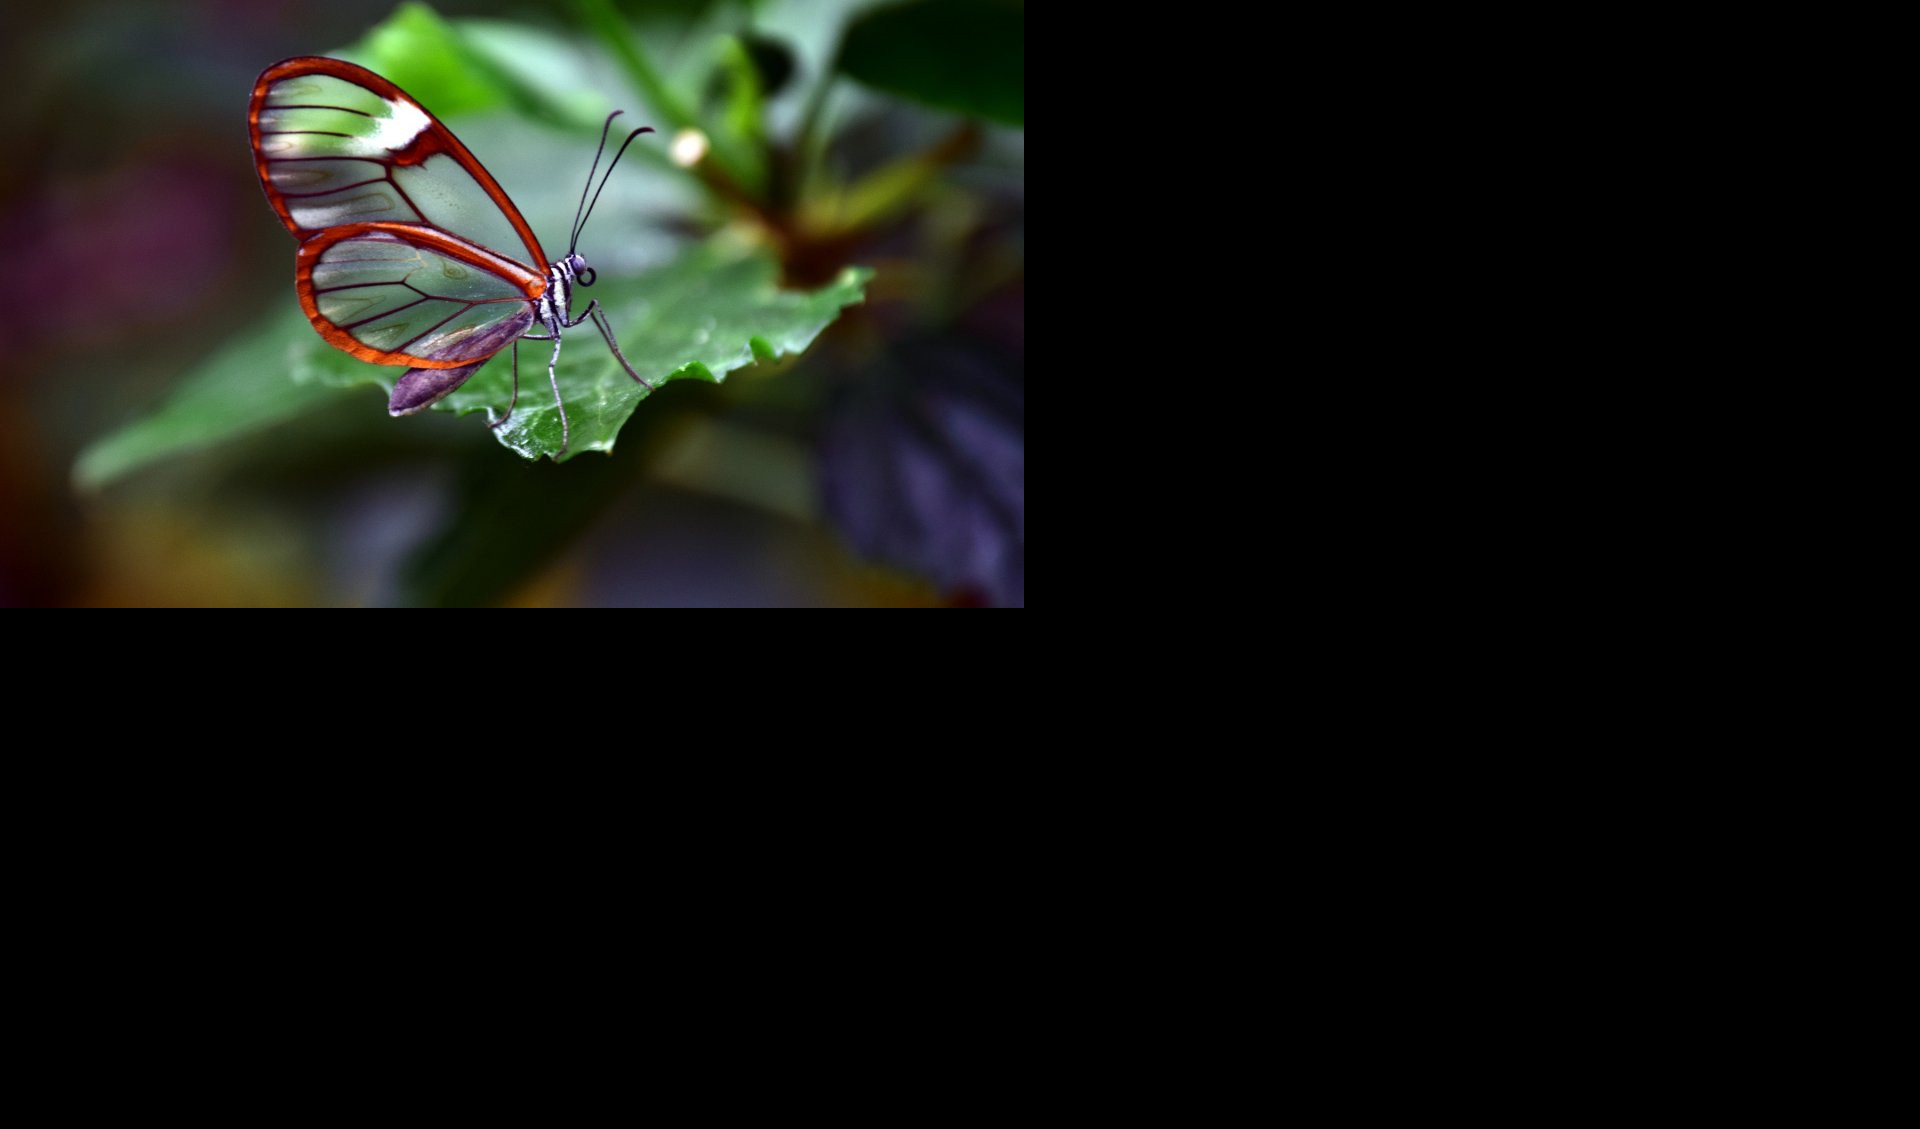 KRILA KAO OGLEDALO: Neobična lepota leptira sa staklenim krilima (VIDEO)